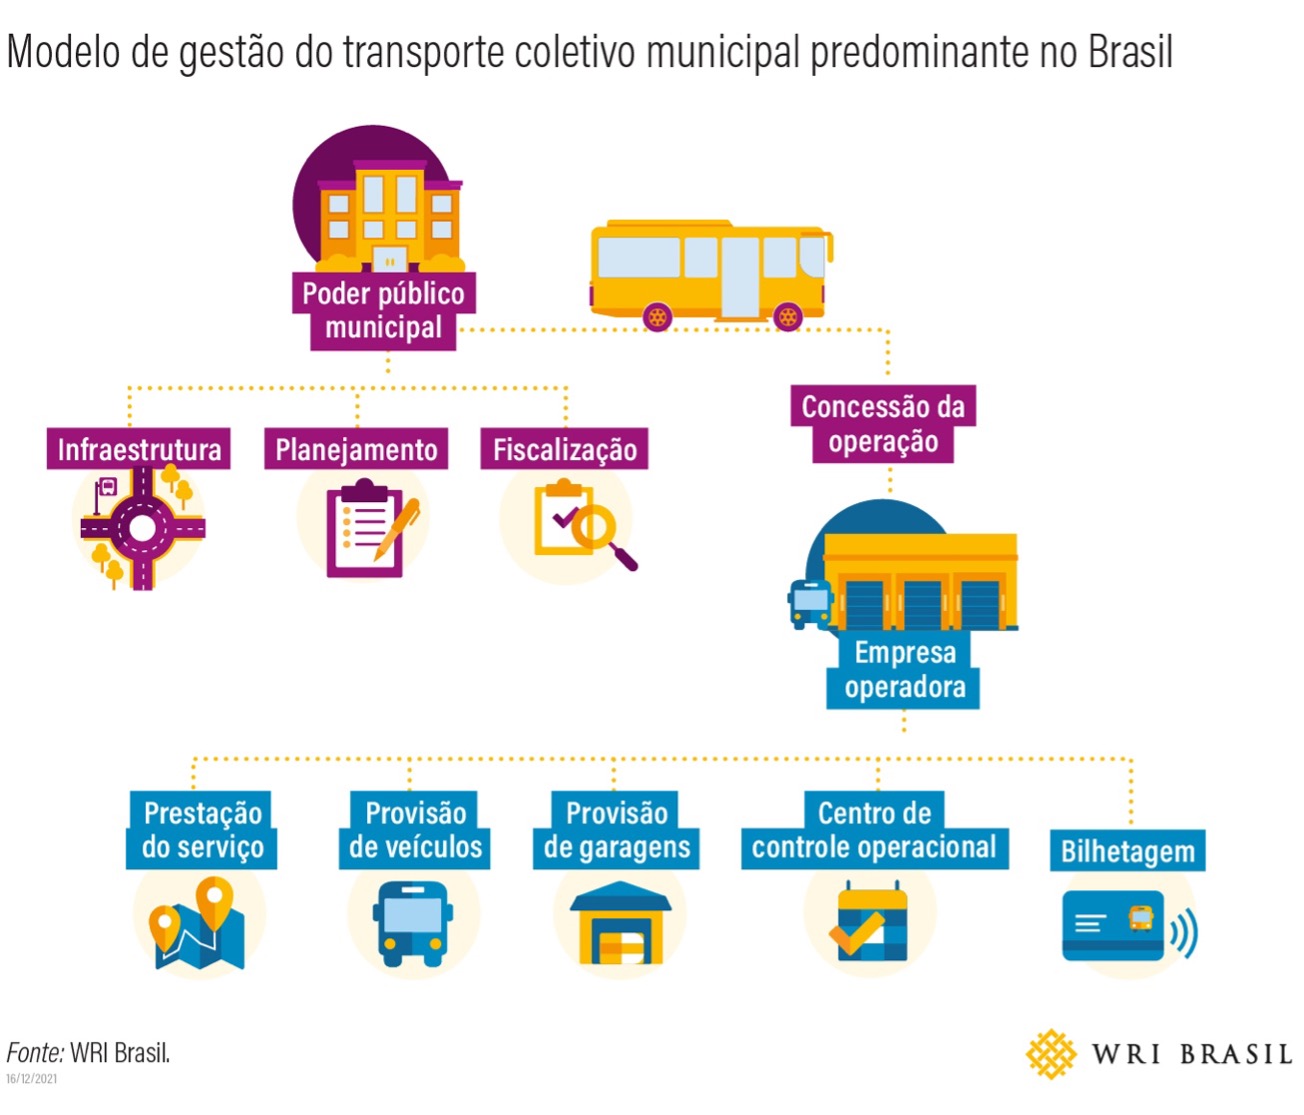 Modelo de gestão do transporte coletivo municipal predominante no Brasil.